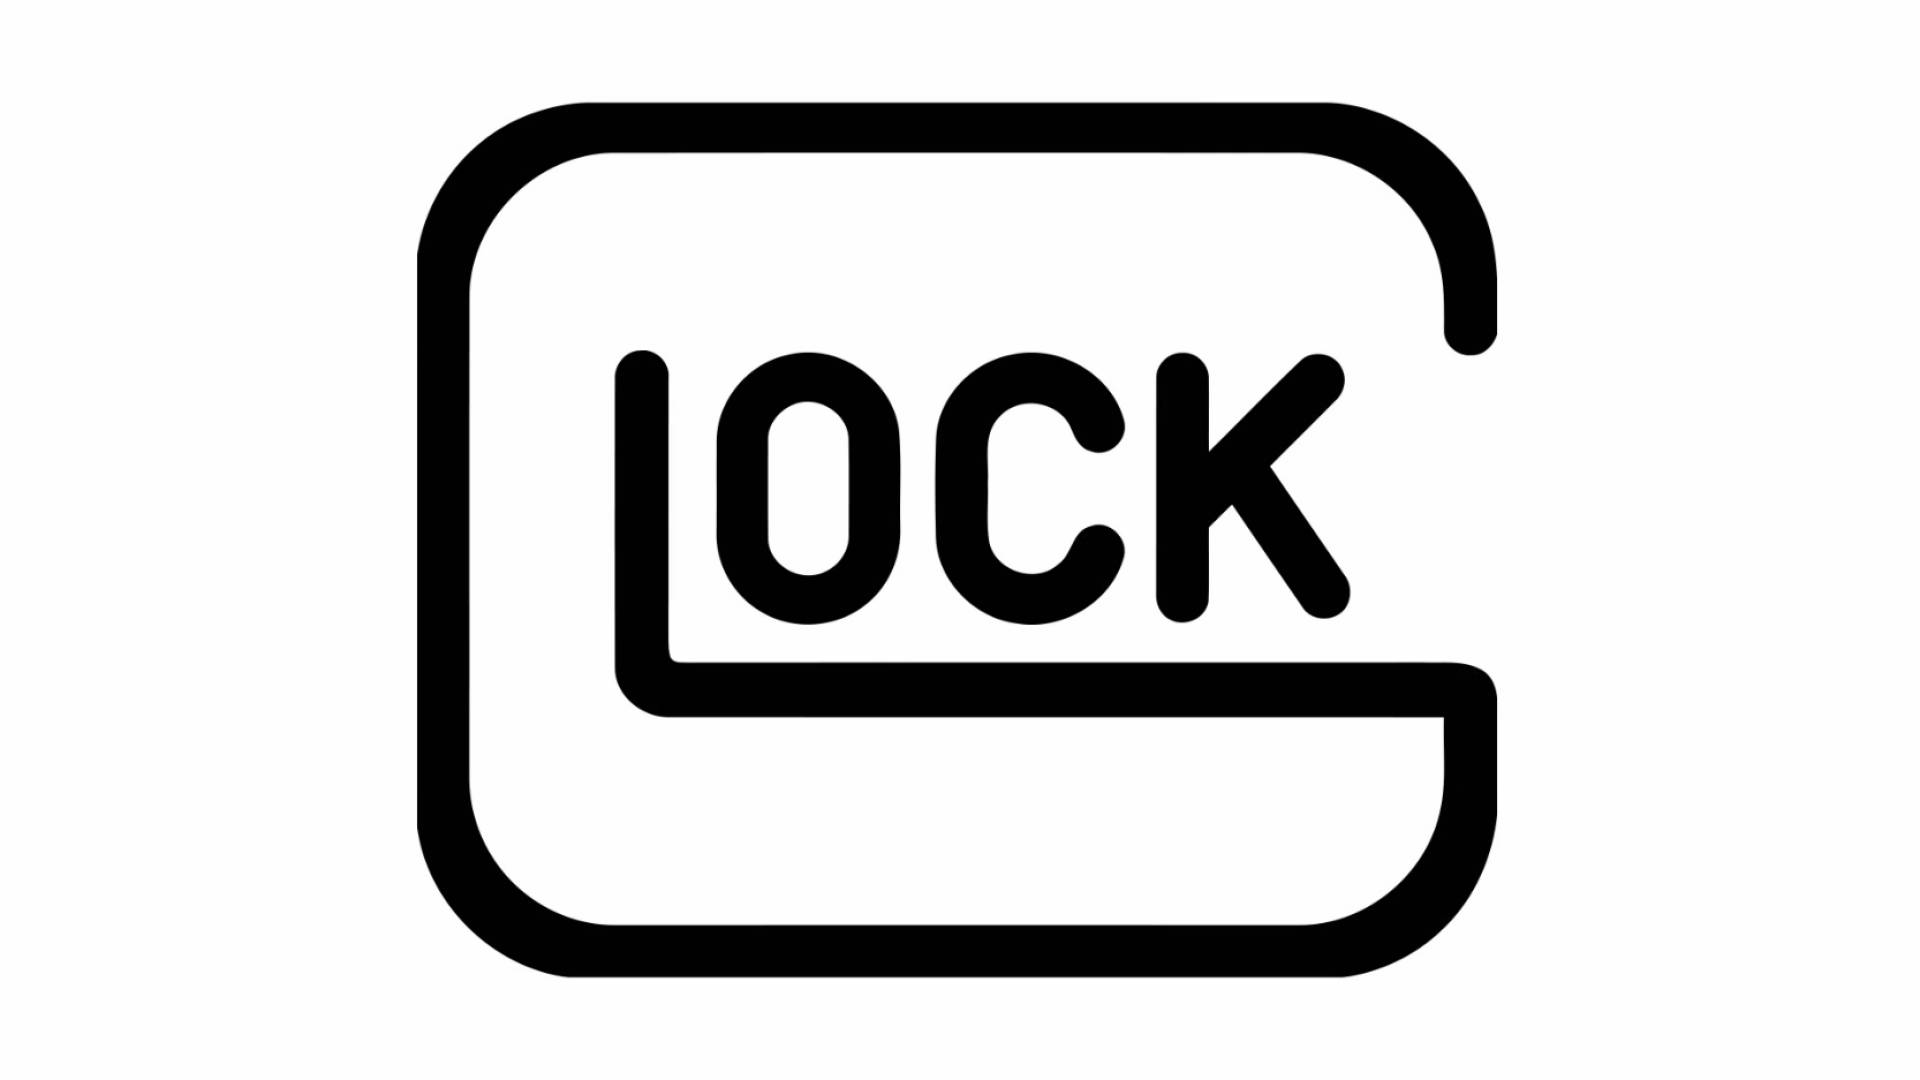 Minimalist Glock Icon Logo Background